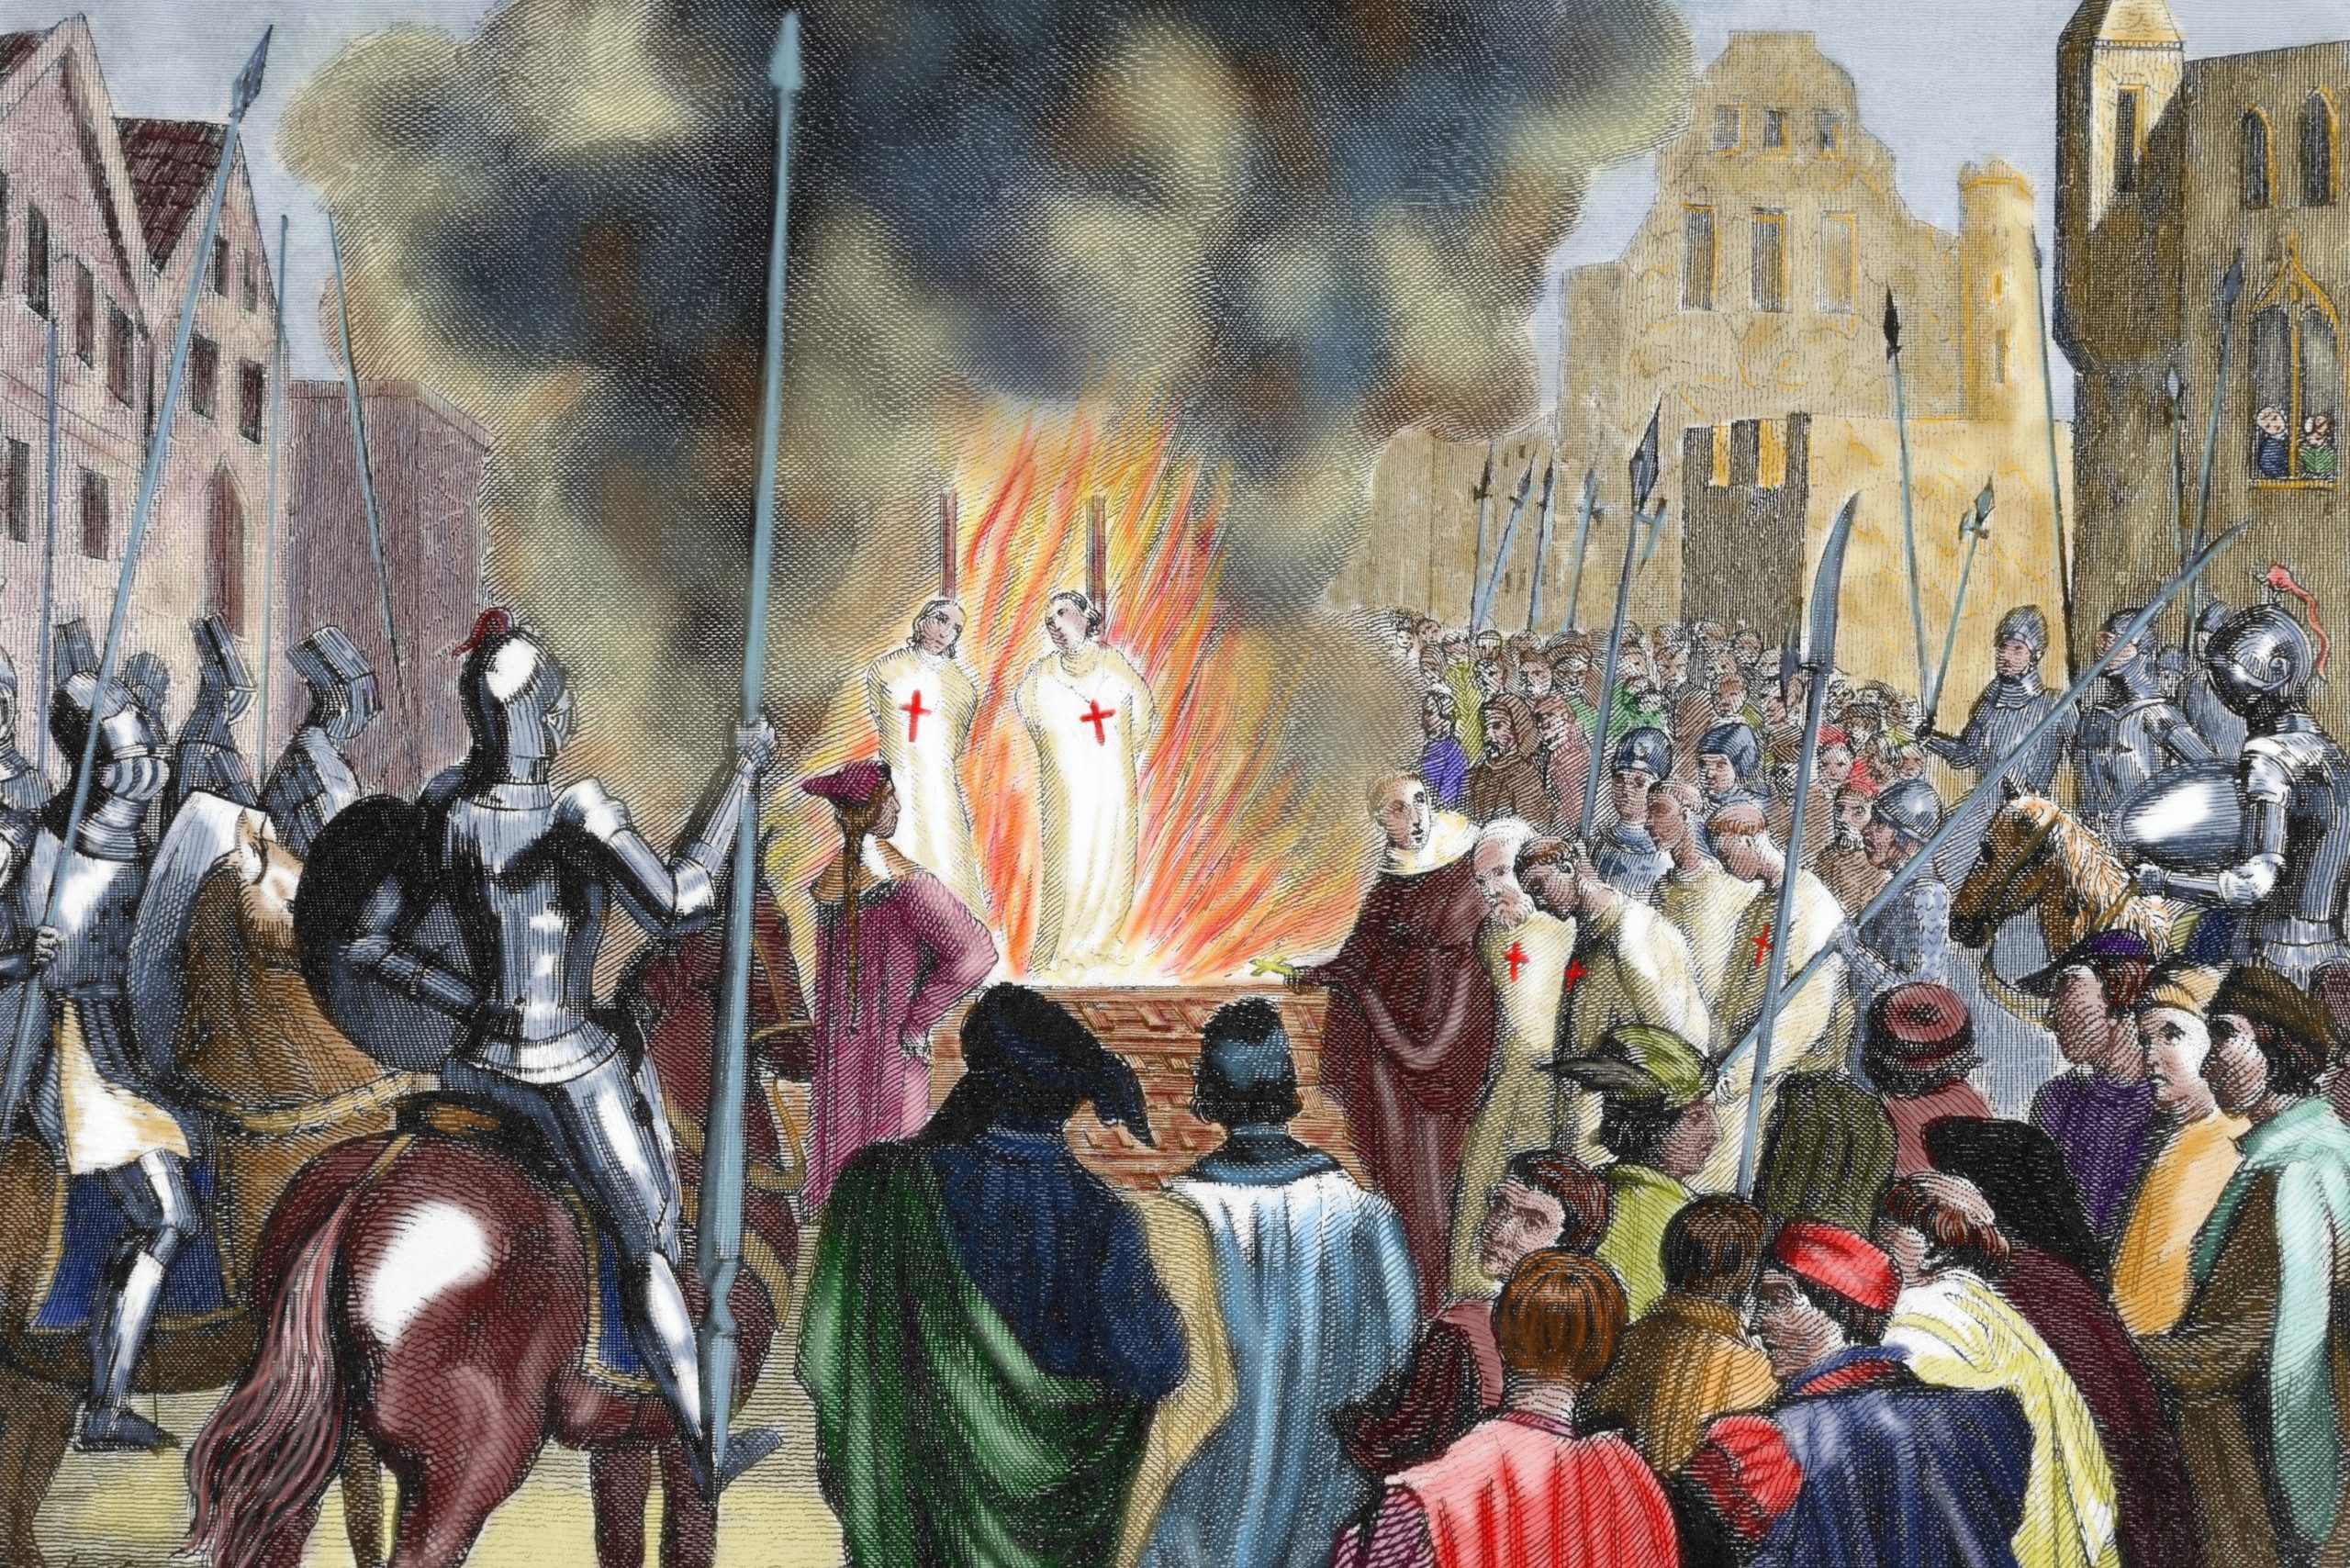 Burning Templar in the 14th century